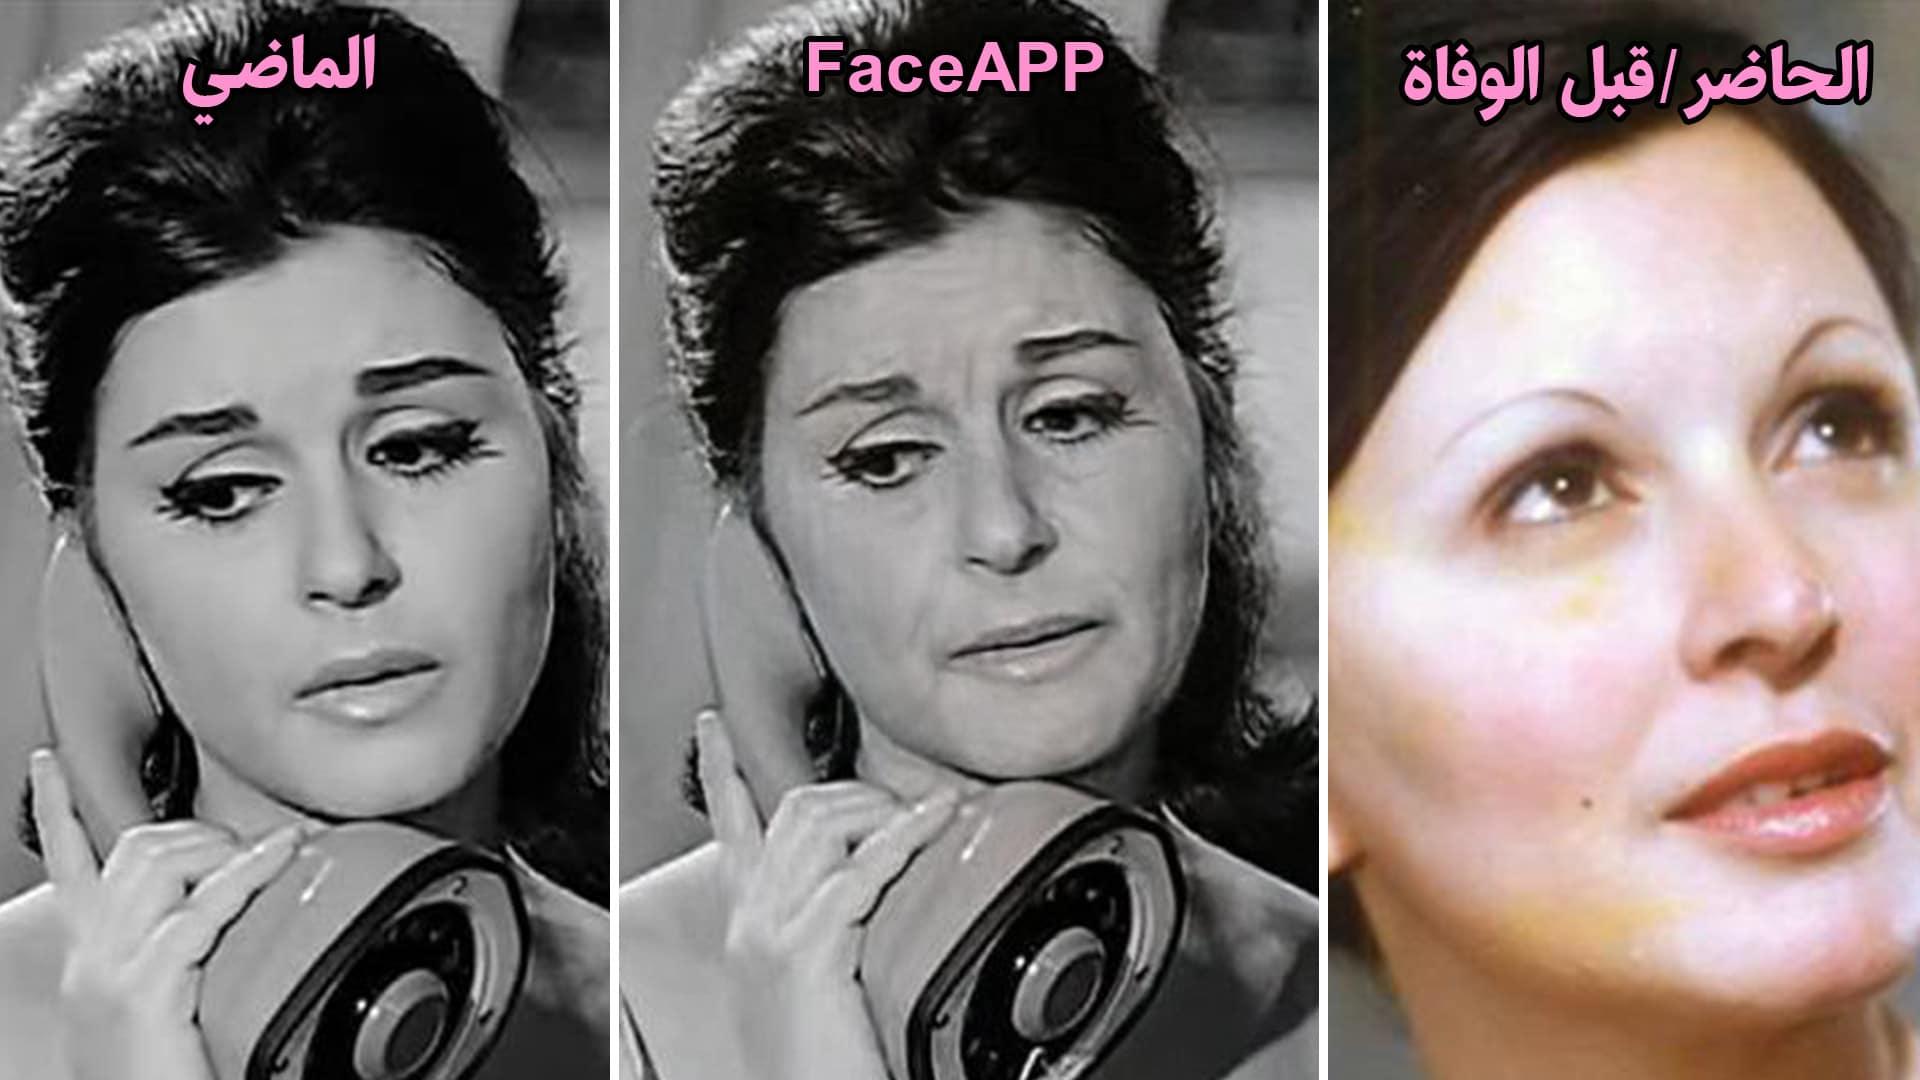 سعاد حسني - face app